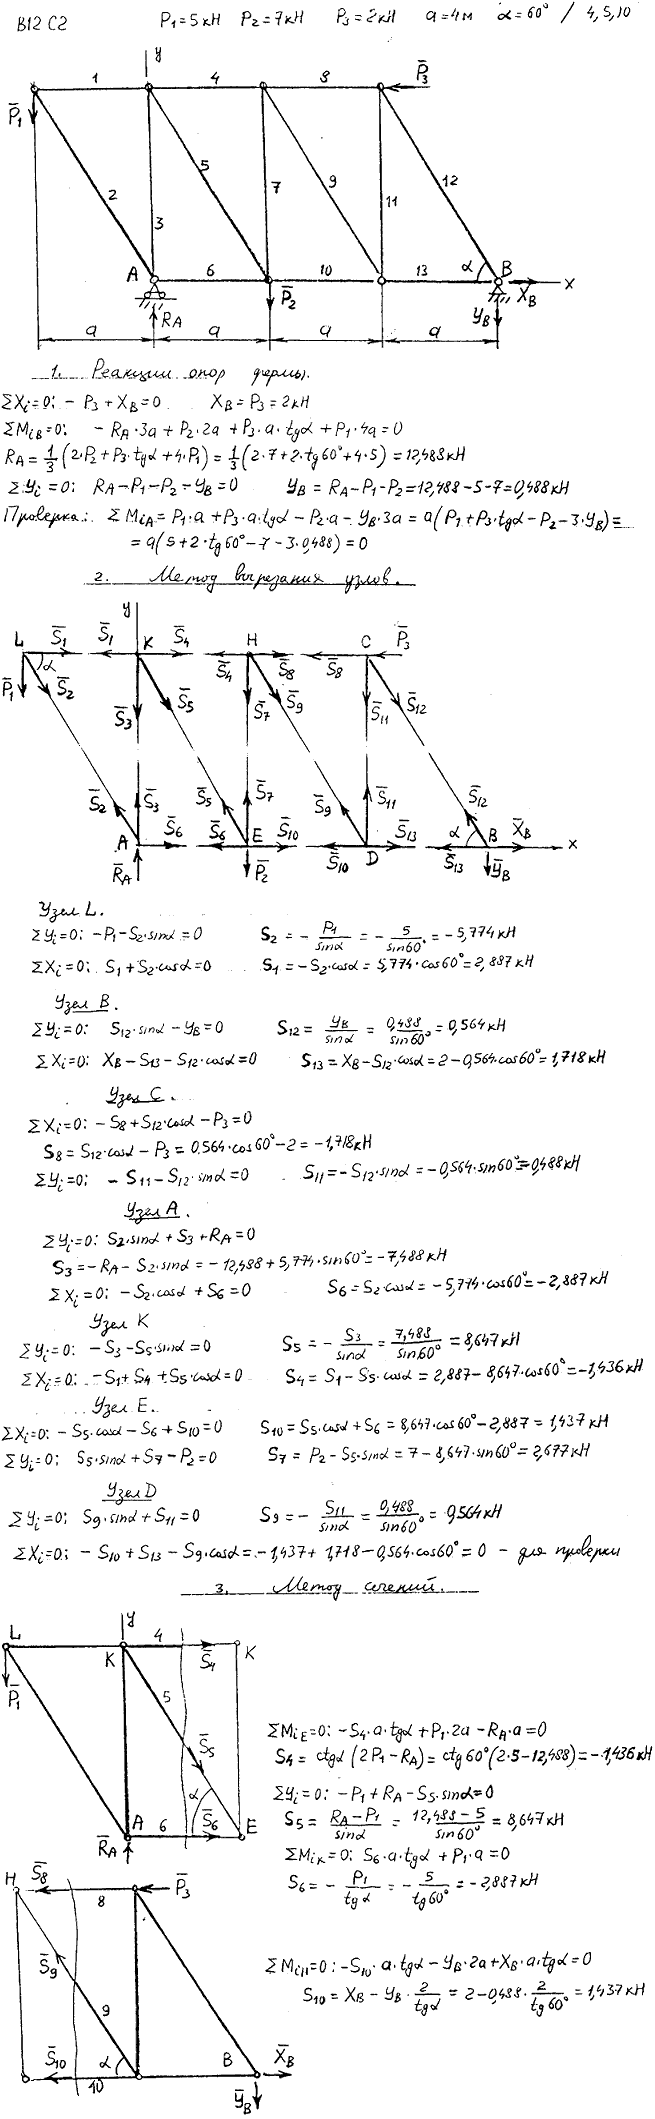 Задание C2 вариант 12. P1=5 кН, P2=7 кН, P3=2 кН, a=4 м, α=60 град, номер стержня 4, 5, 10.